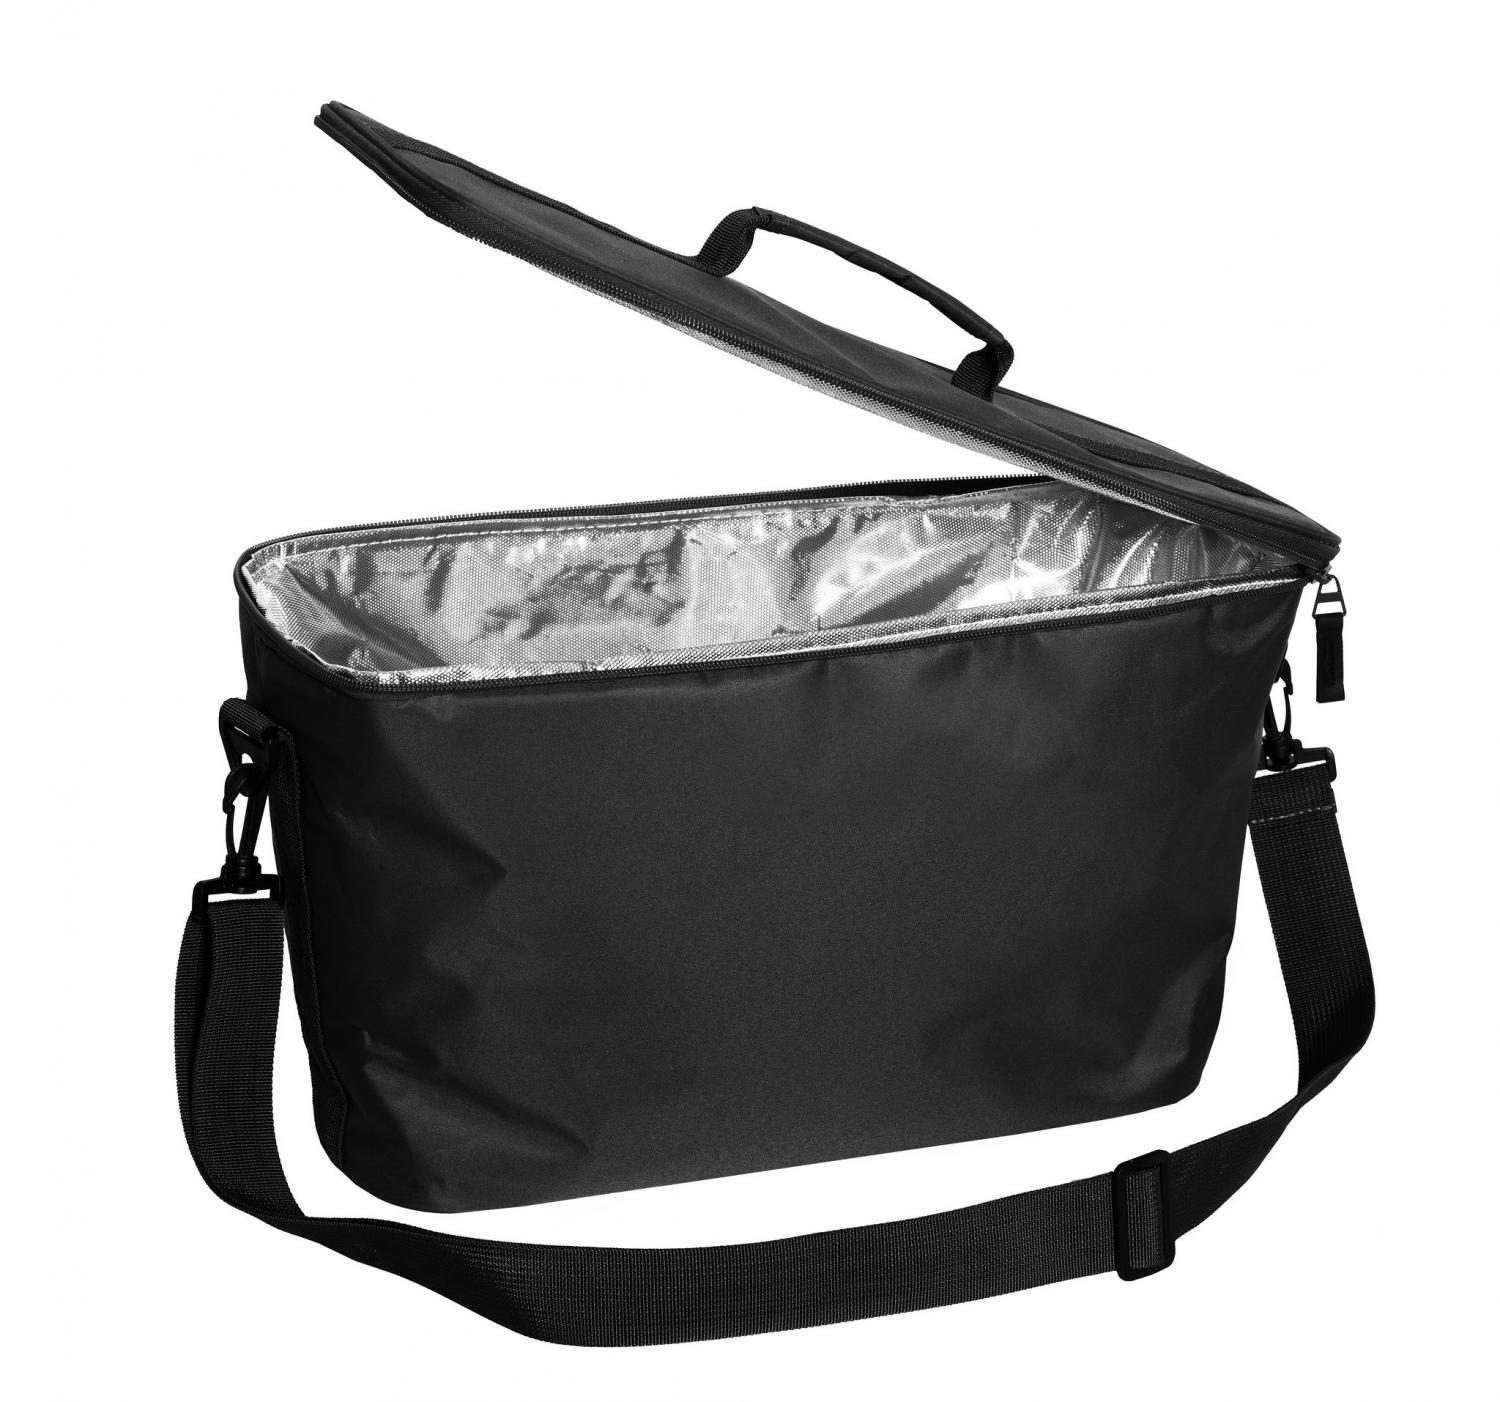 Hinza Cooler Bag Large with shoulder strap